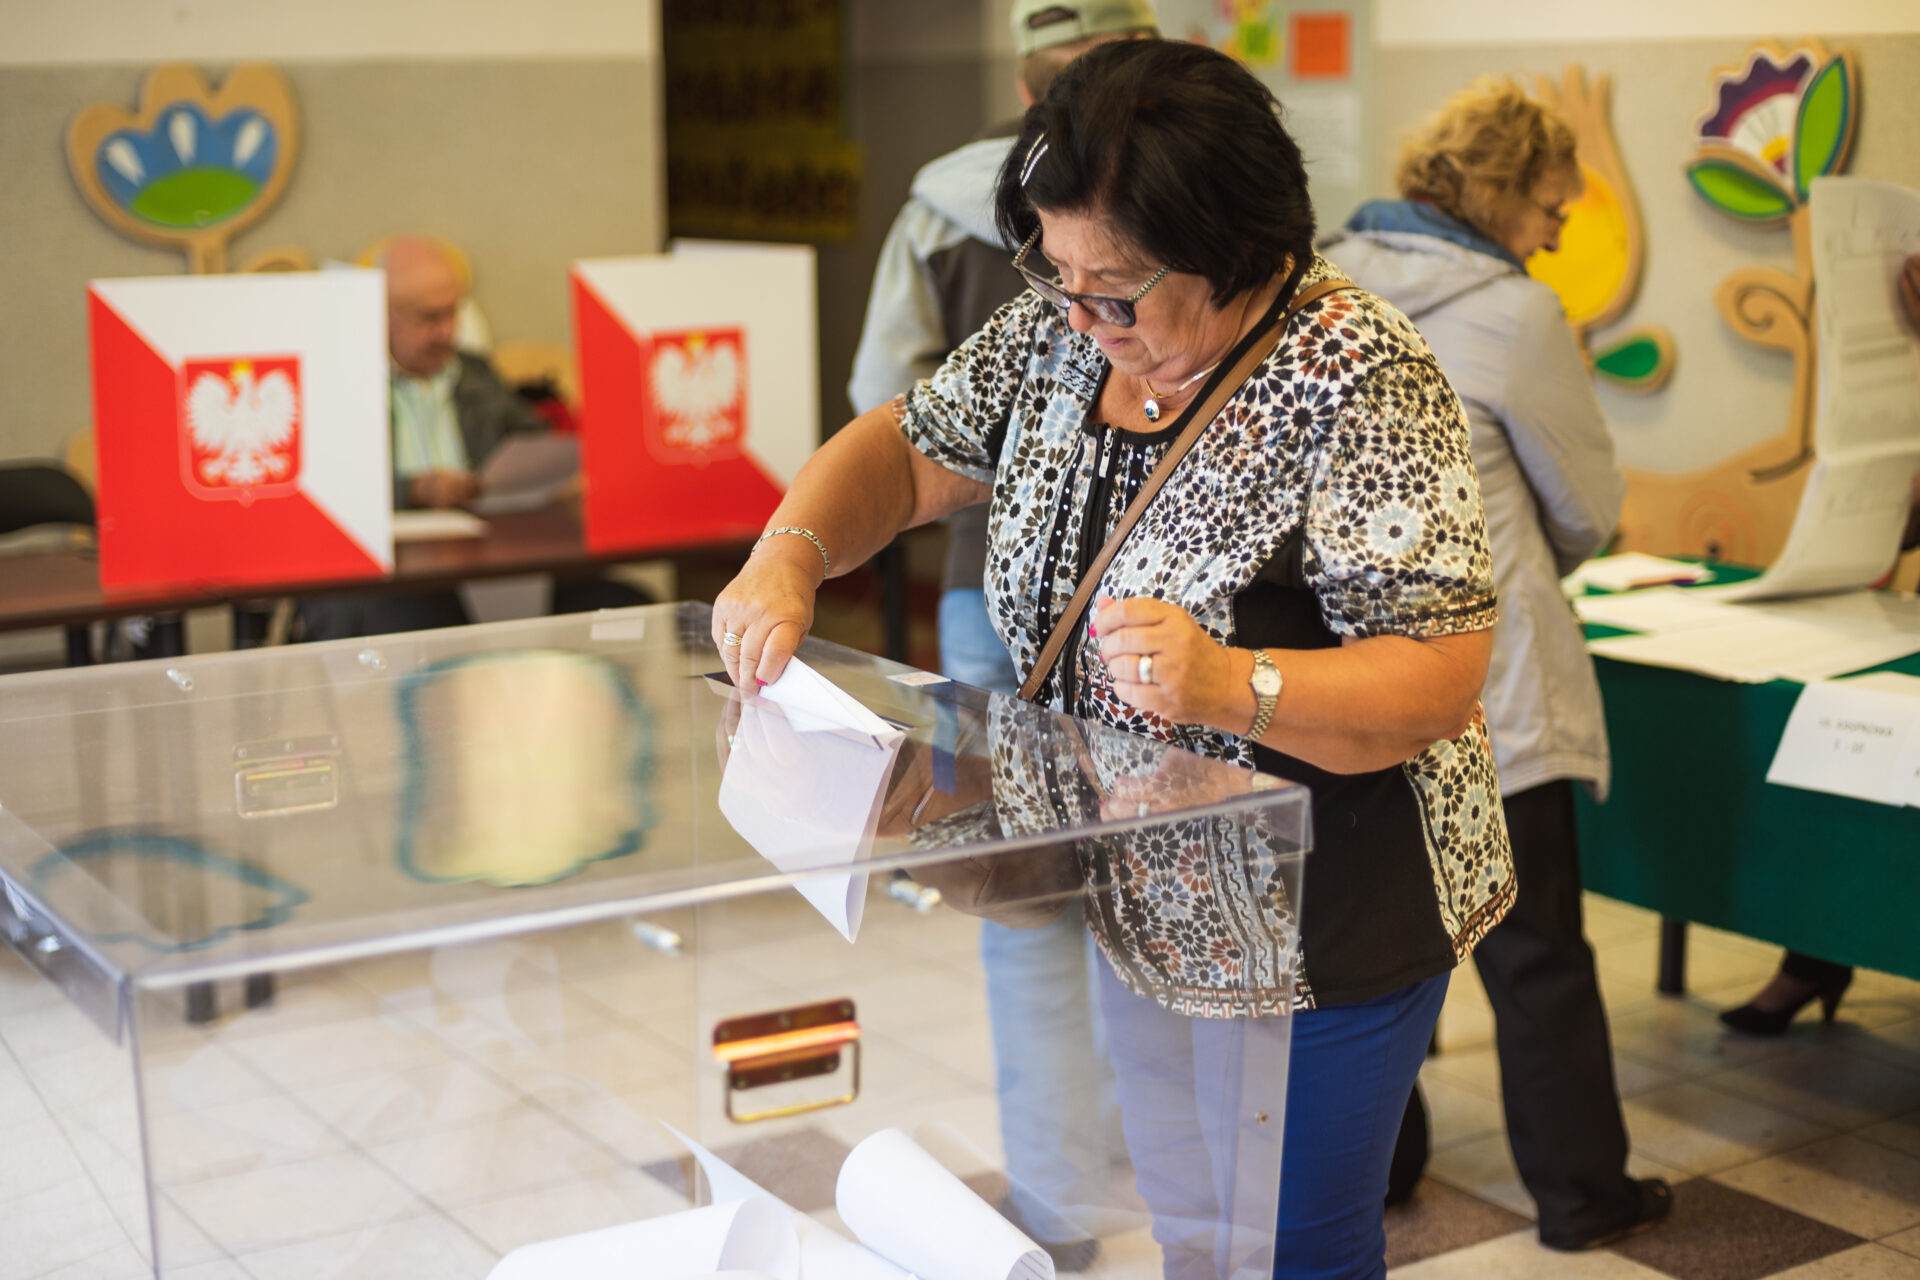 Kobieta w krótkich czarnych włosach wrzuca kartę do głosowania do urny wyborczej.